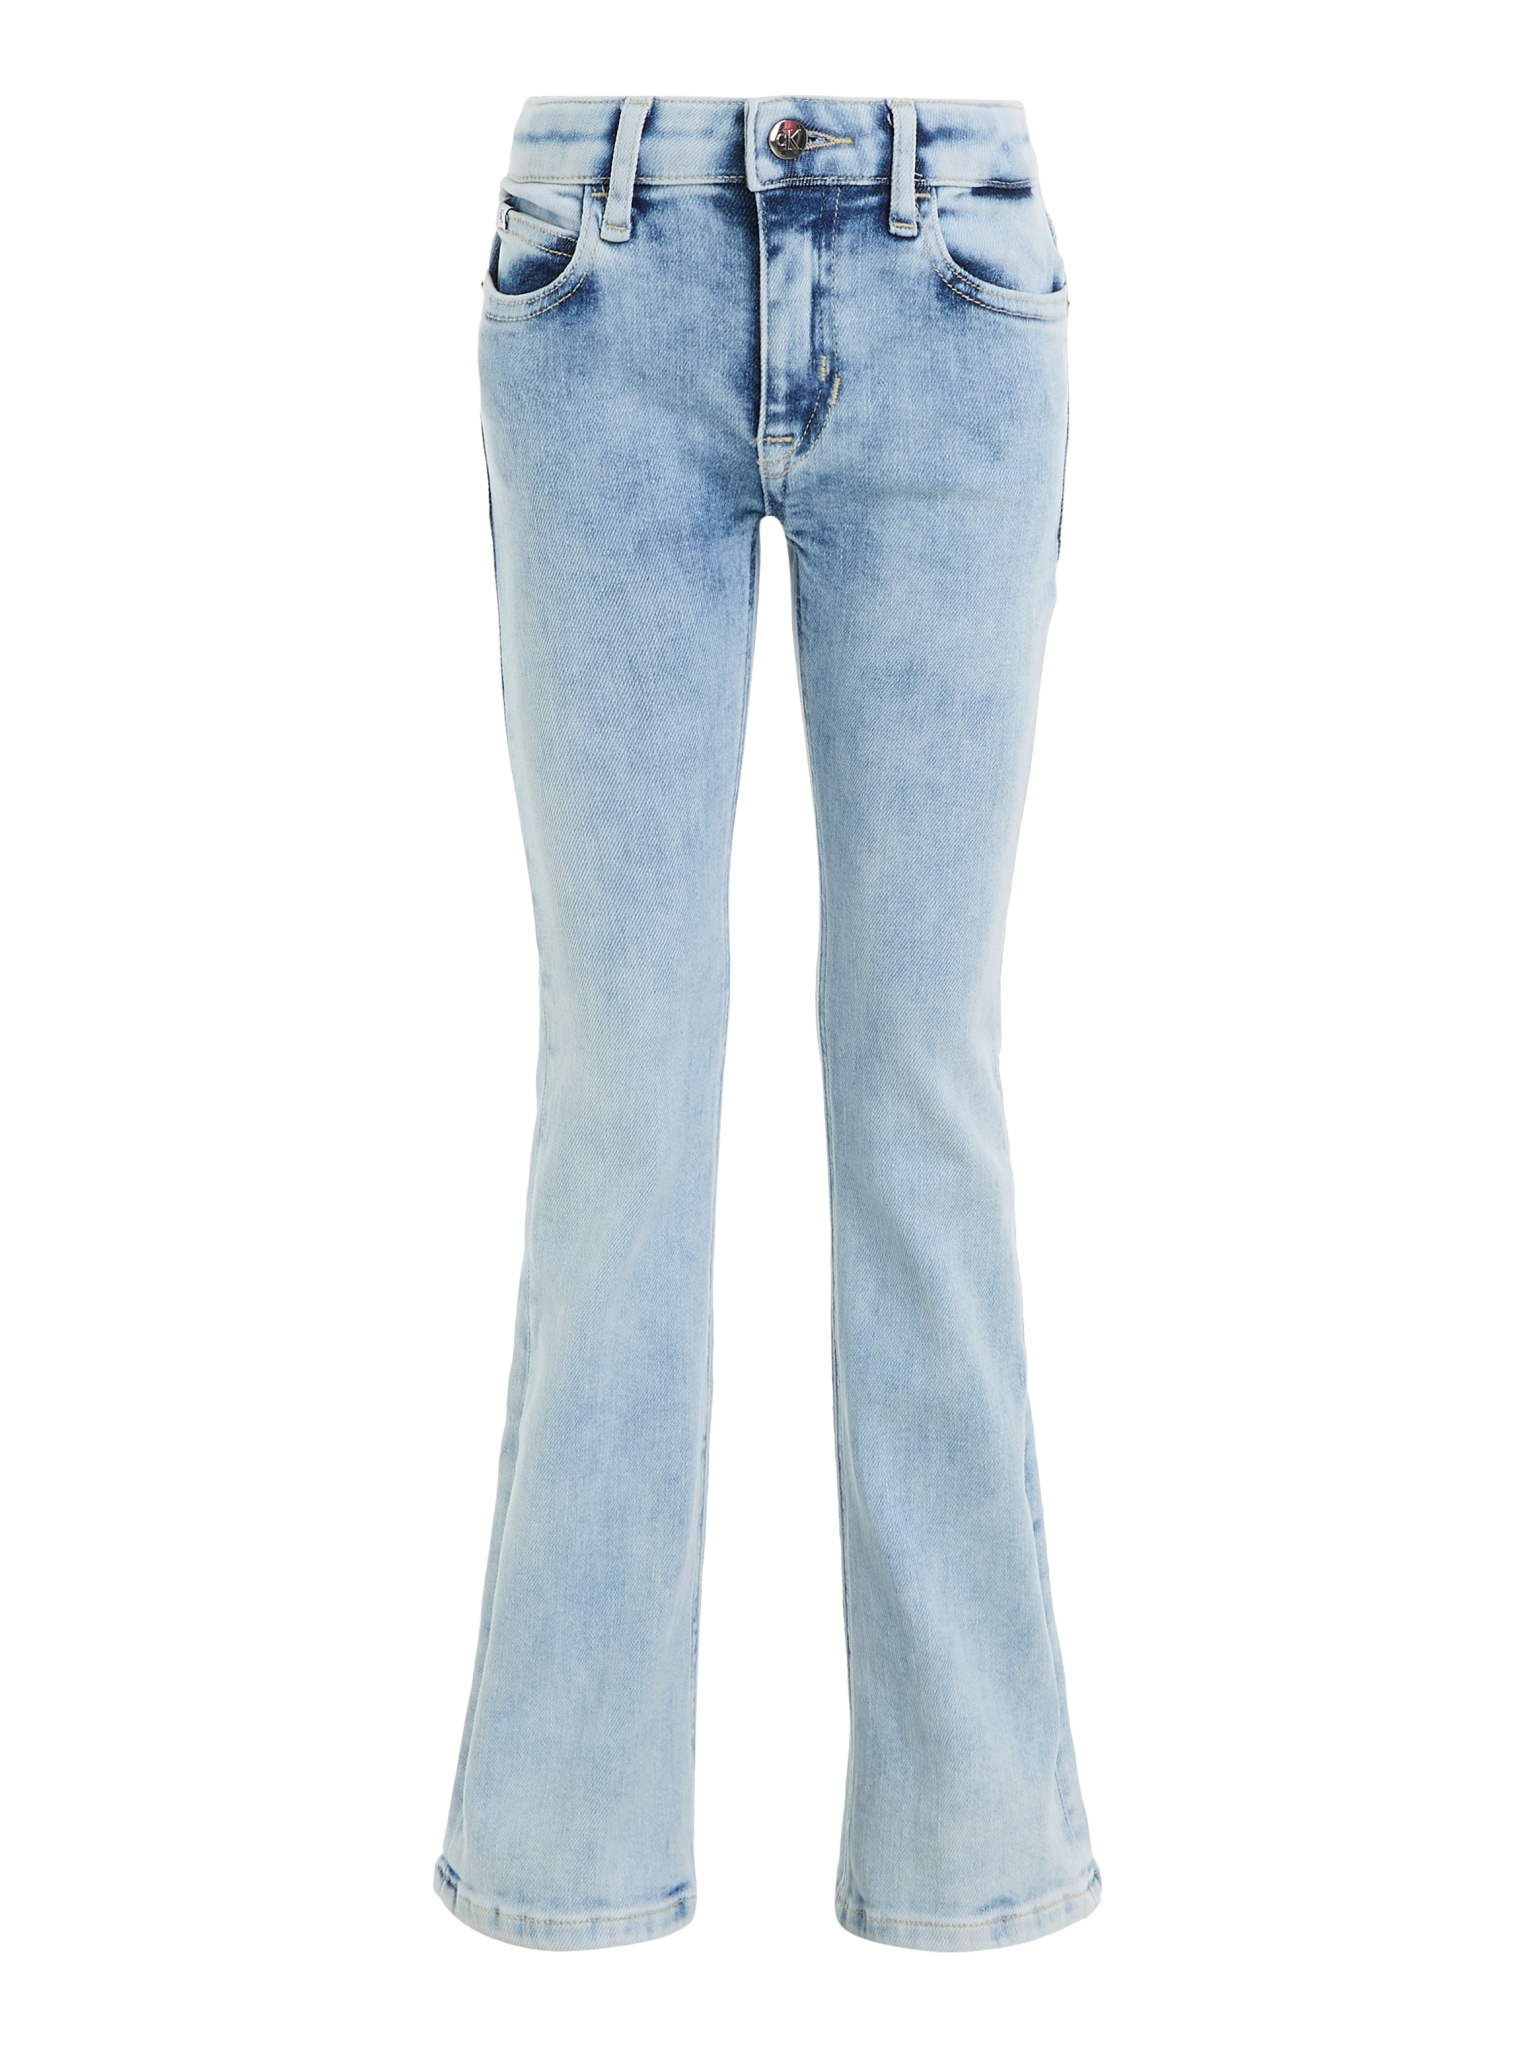 CALVIN KLEIN Jeans 10728846 kaufen | WÖHRL